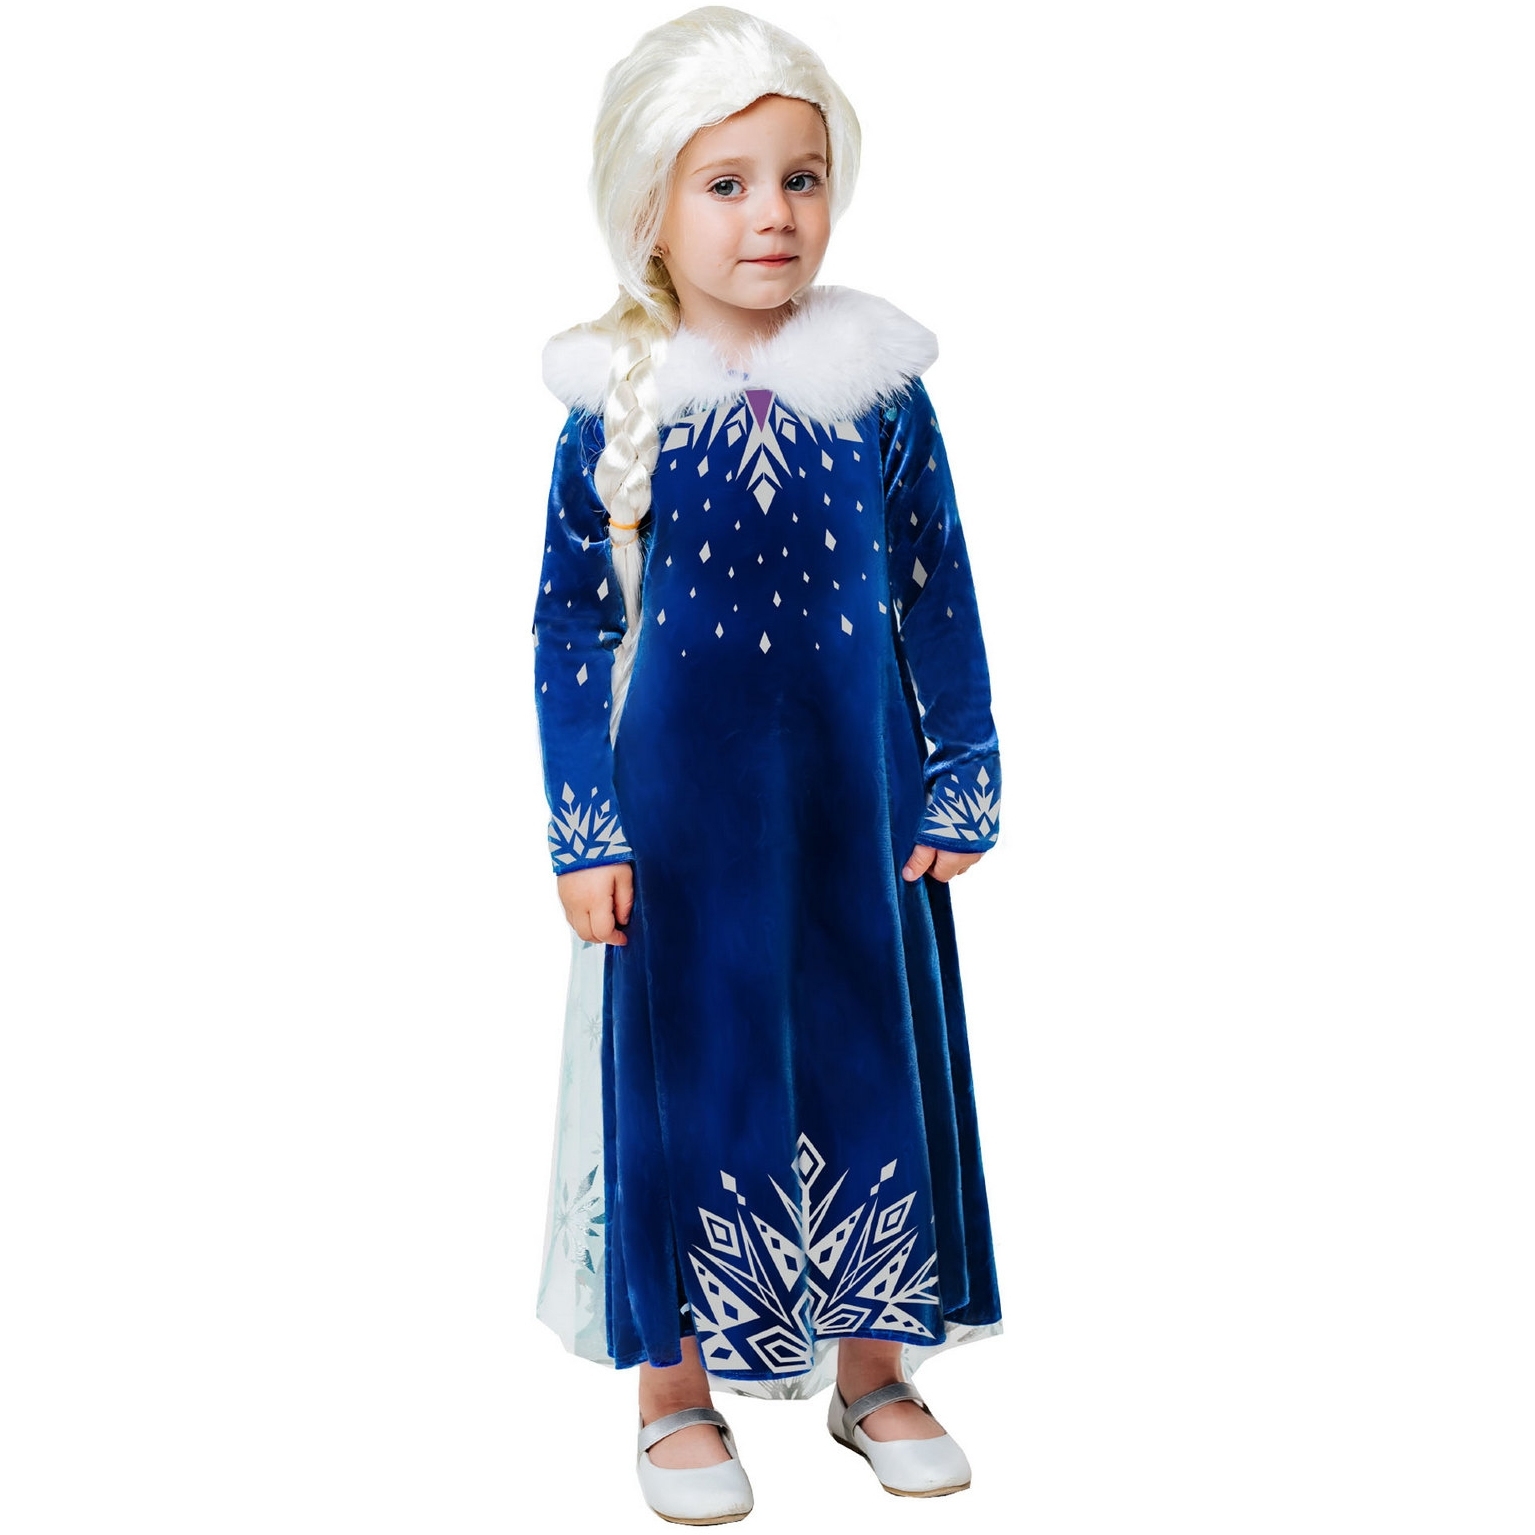 Карнавальный костюм "Эльза зимнее платье" (платье с накидкой, парик) размер 110-56